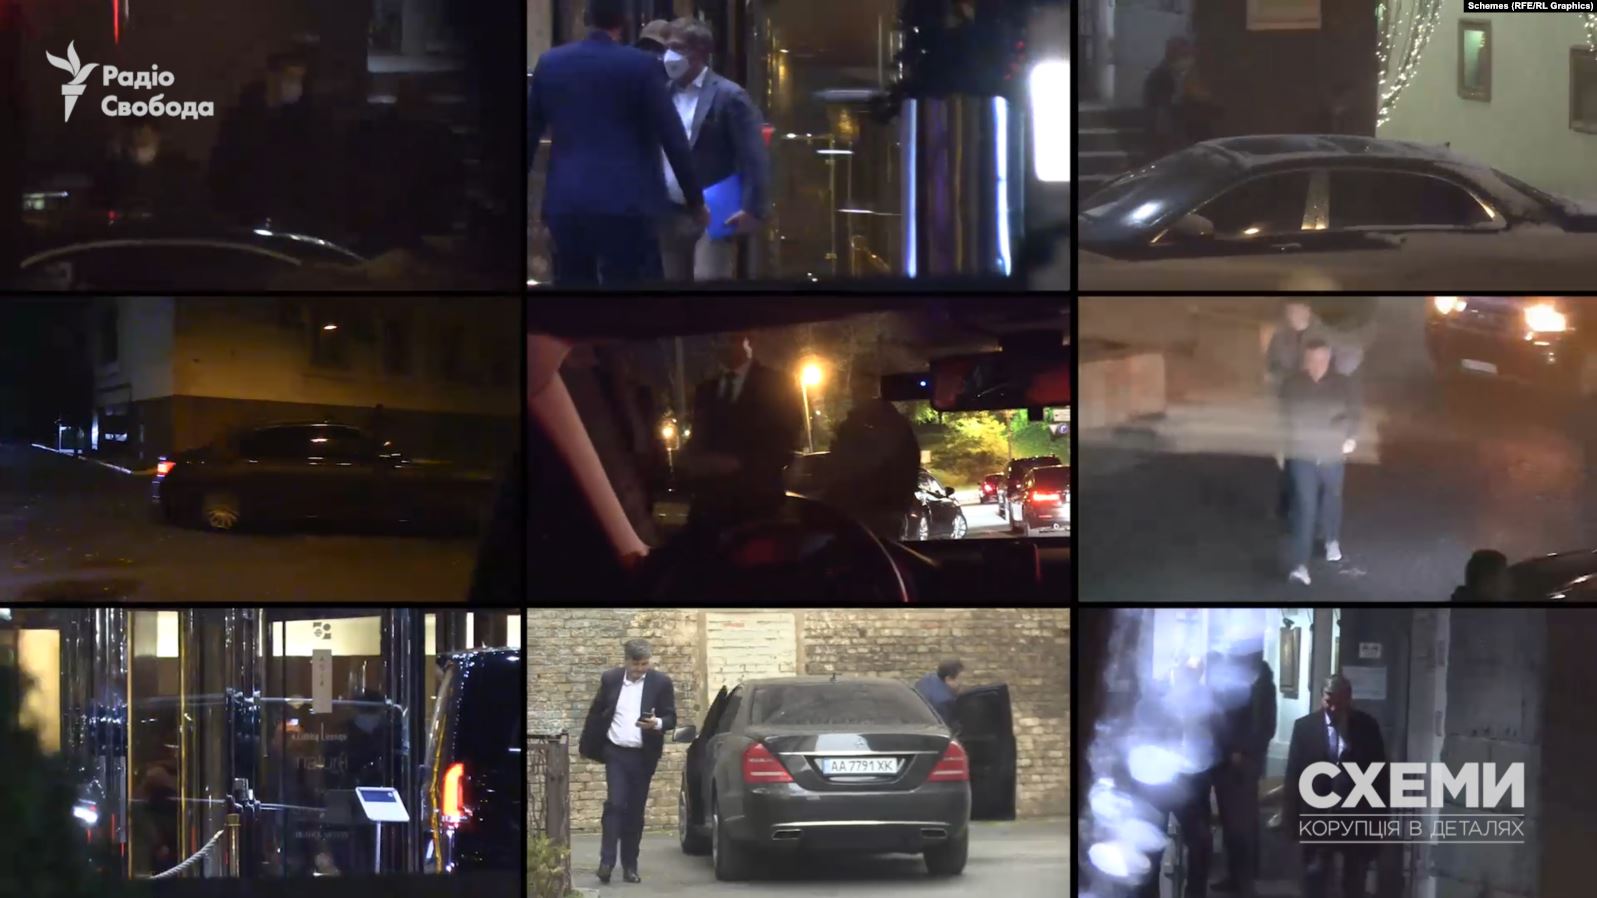 Переговори у нічному Києві — у мережі опублікували відео таємних зустрічей олігархів і топ-чиновників